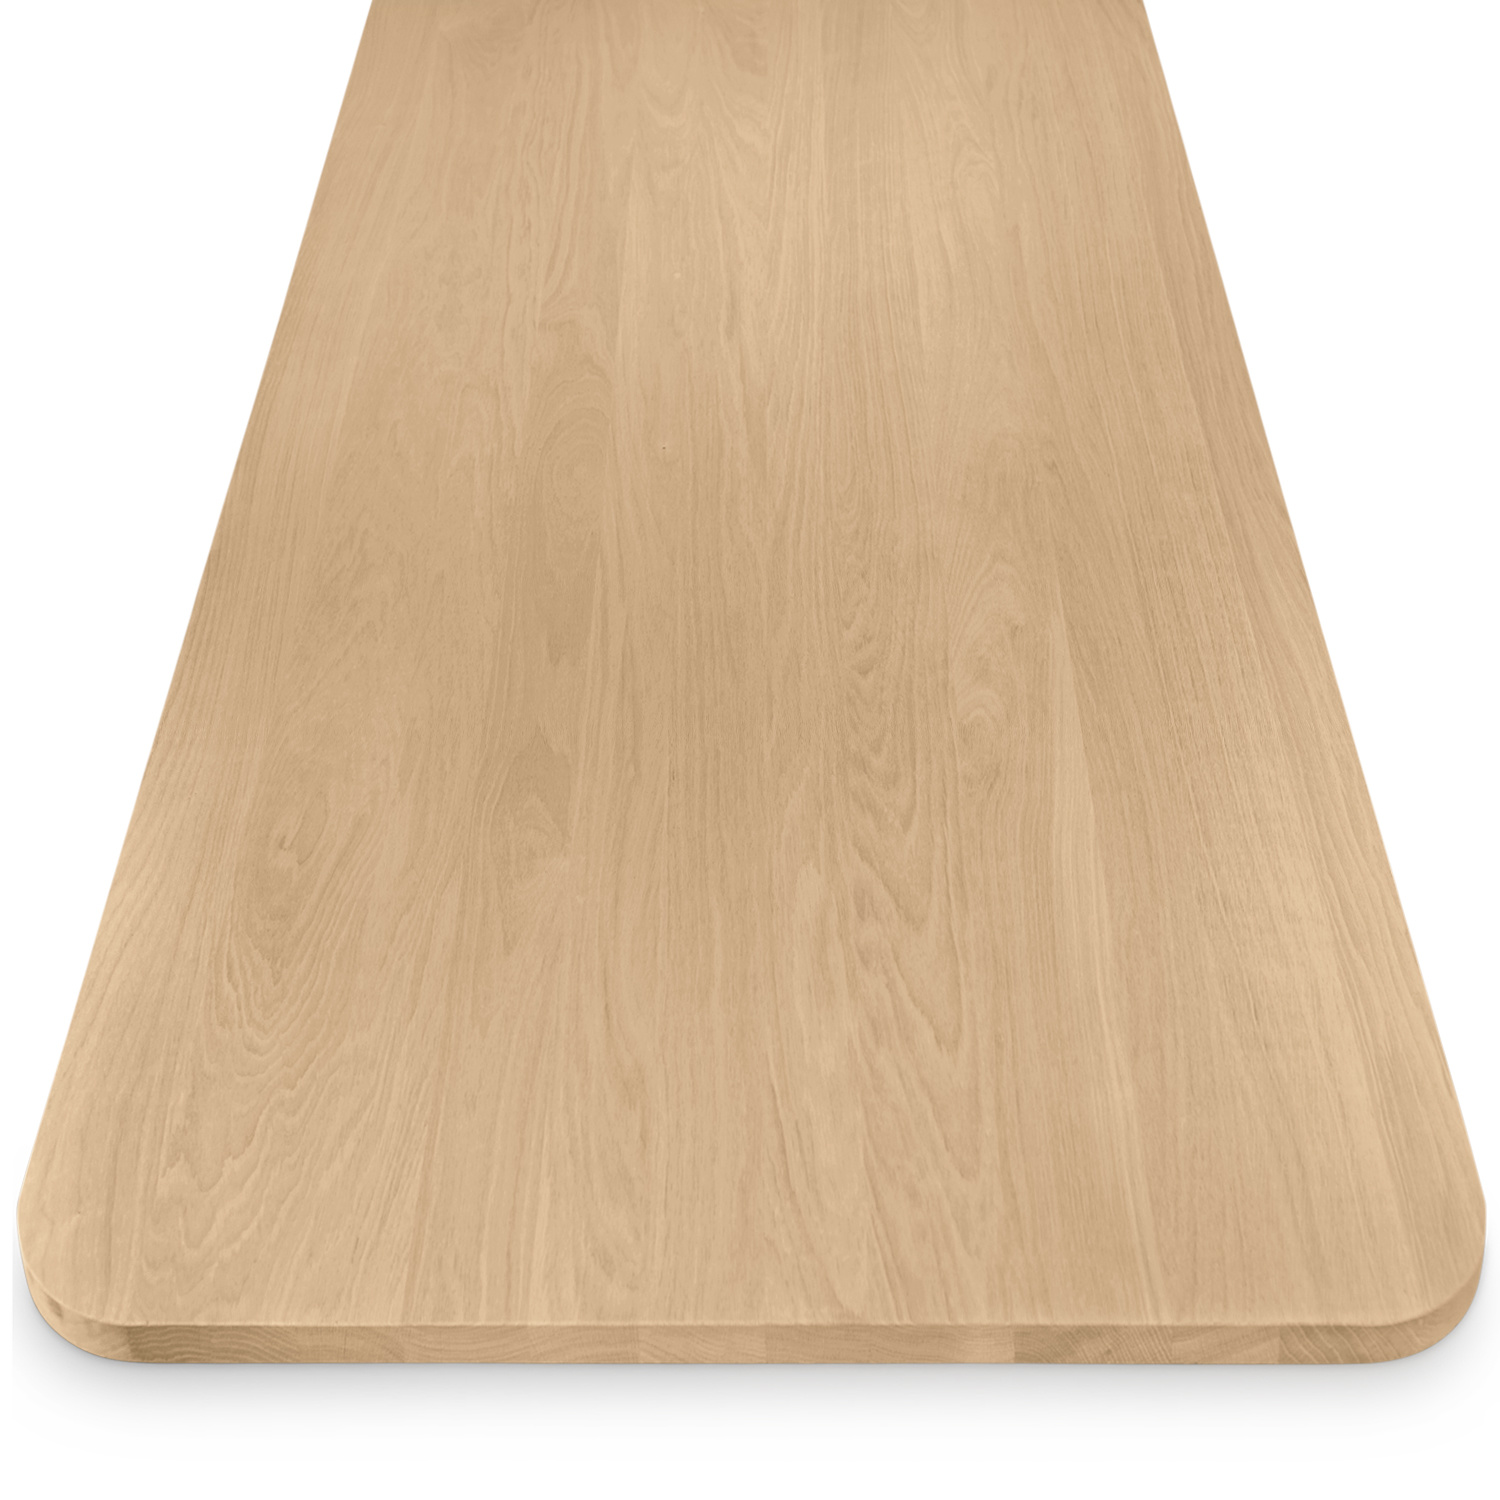  Eiken tafelblad met ronde hoeken - op maat - 3 cm dik (1-laag) - foutvrij Europees eikenhout - verlijmd kd 8-12% - 50-120x50-300 cm - Afgeronde hoeken radius 5, 8, of 10 cm